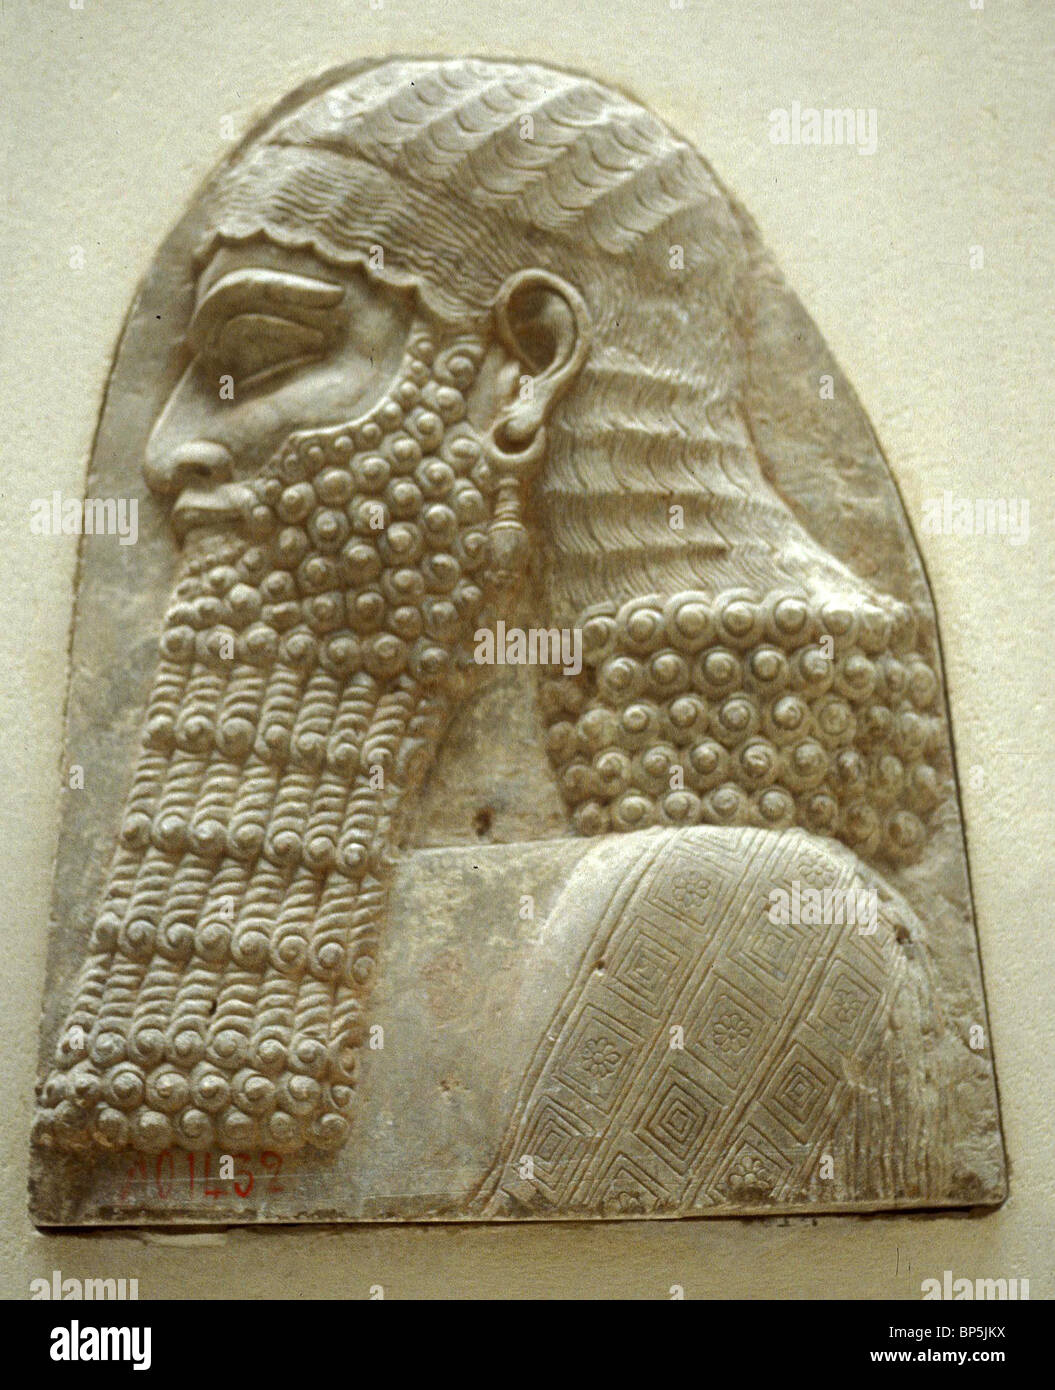 4051. ASSYRISCHE ADLIGEN, BEFREIUNG VON KÖNIG SARAGON II PALAST IN KHORSABAD, CA. 725 V. CHR. Stockfoto